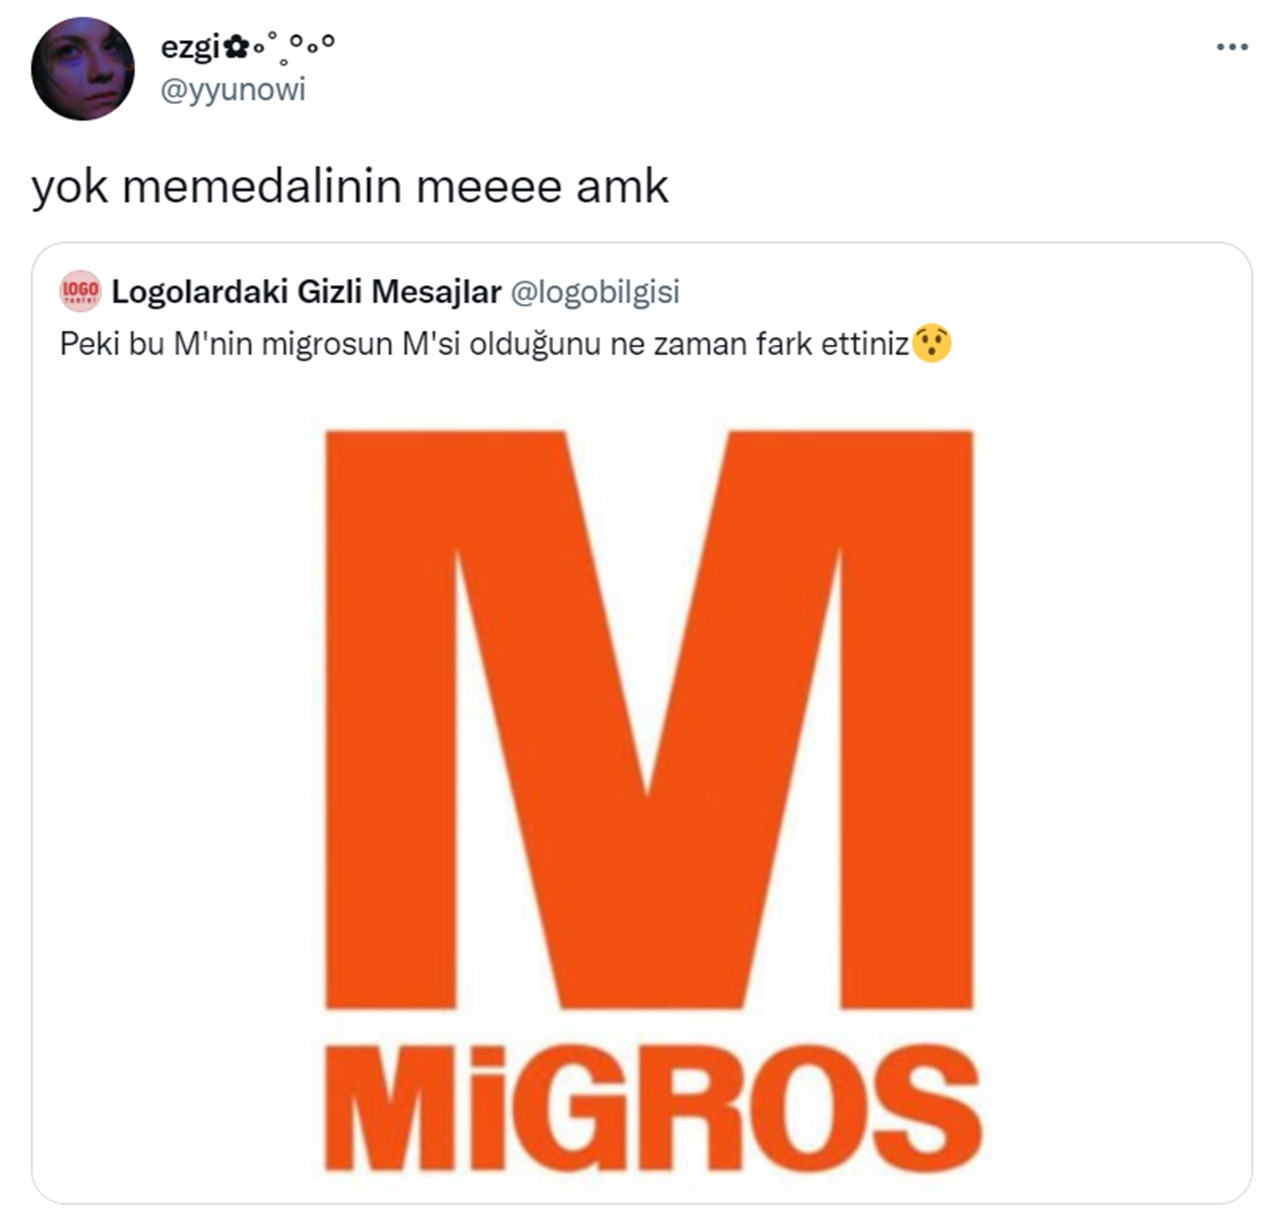 migros tweet